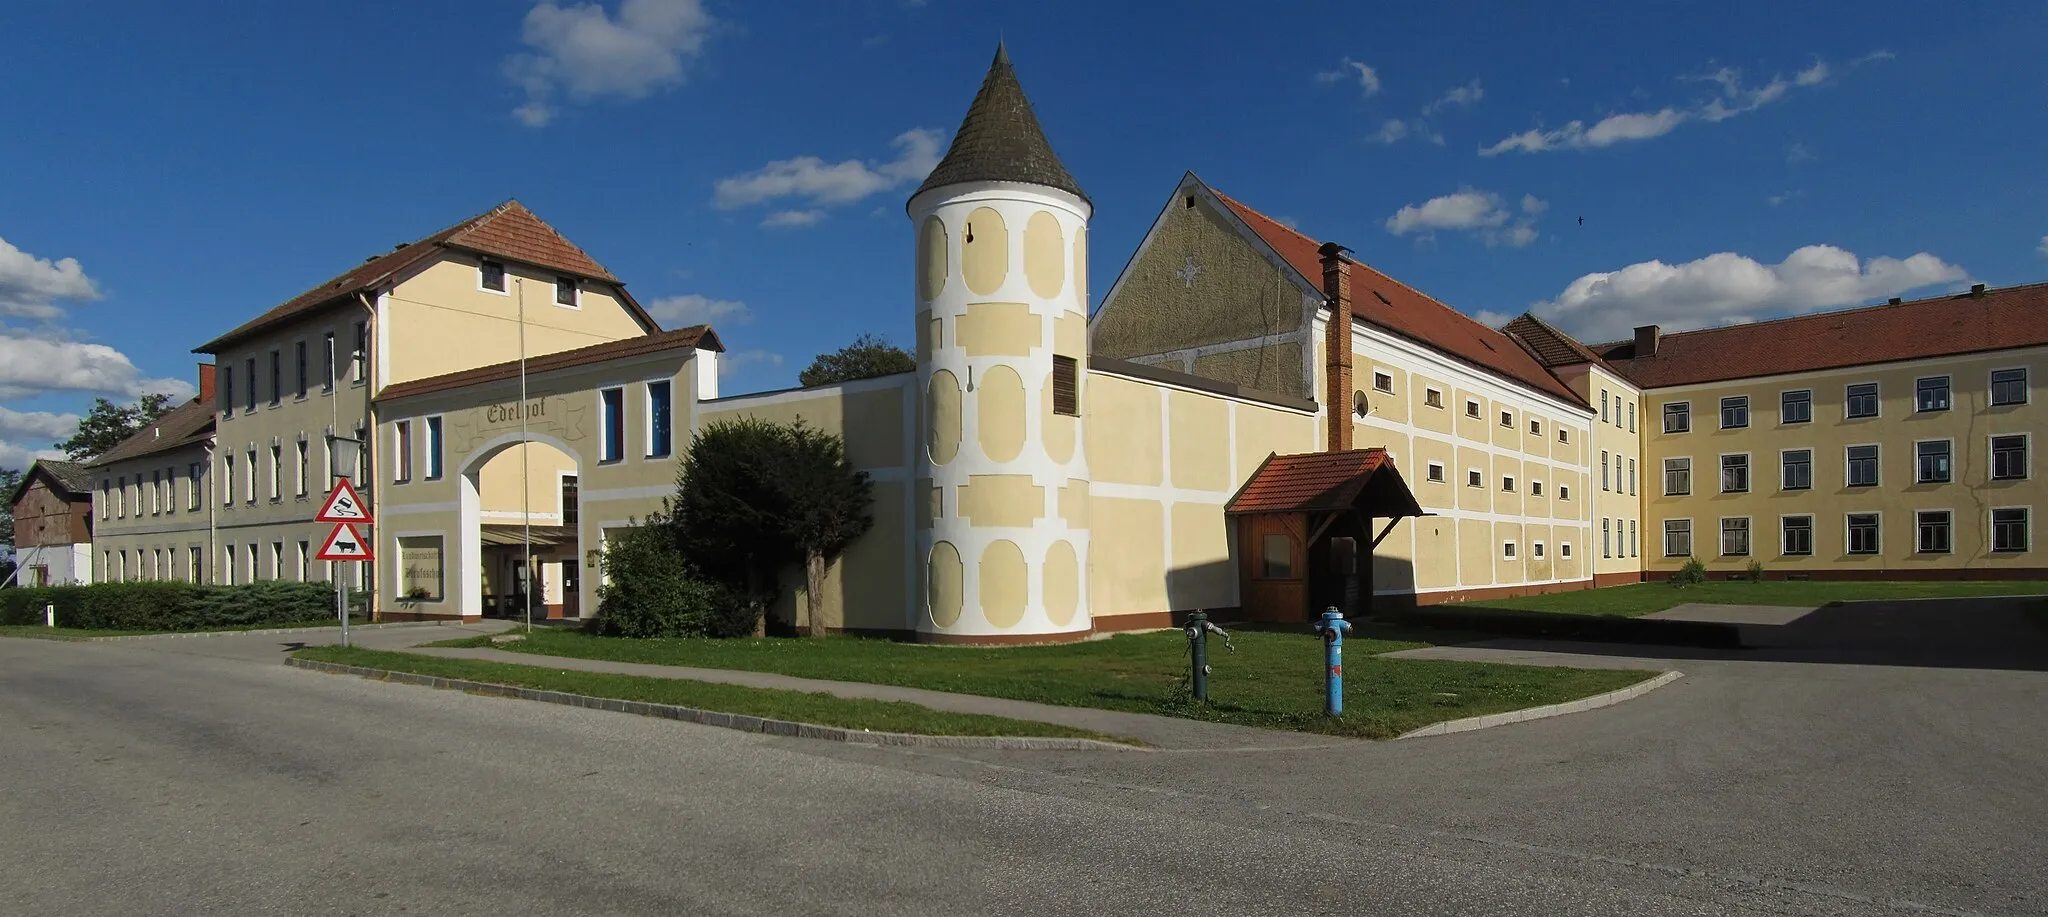 Photo showing: Der Edelhof ist ein ehemaliger Gutshof, der vom 12. Jahrhundert bis 1787 im Besitz des Stiftes Zwettl war und 1688 bis 1690 nach einem Brand neu aufgebaut wurde. Seit 1873 beherbergt er eine Landwirtschaftliche Fachschule.